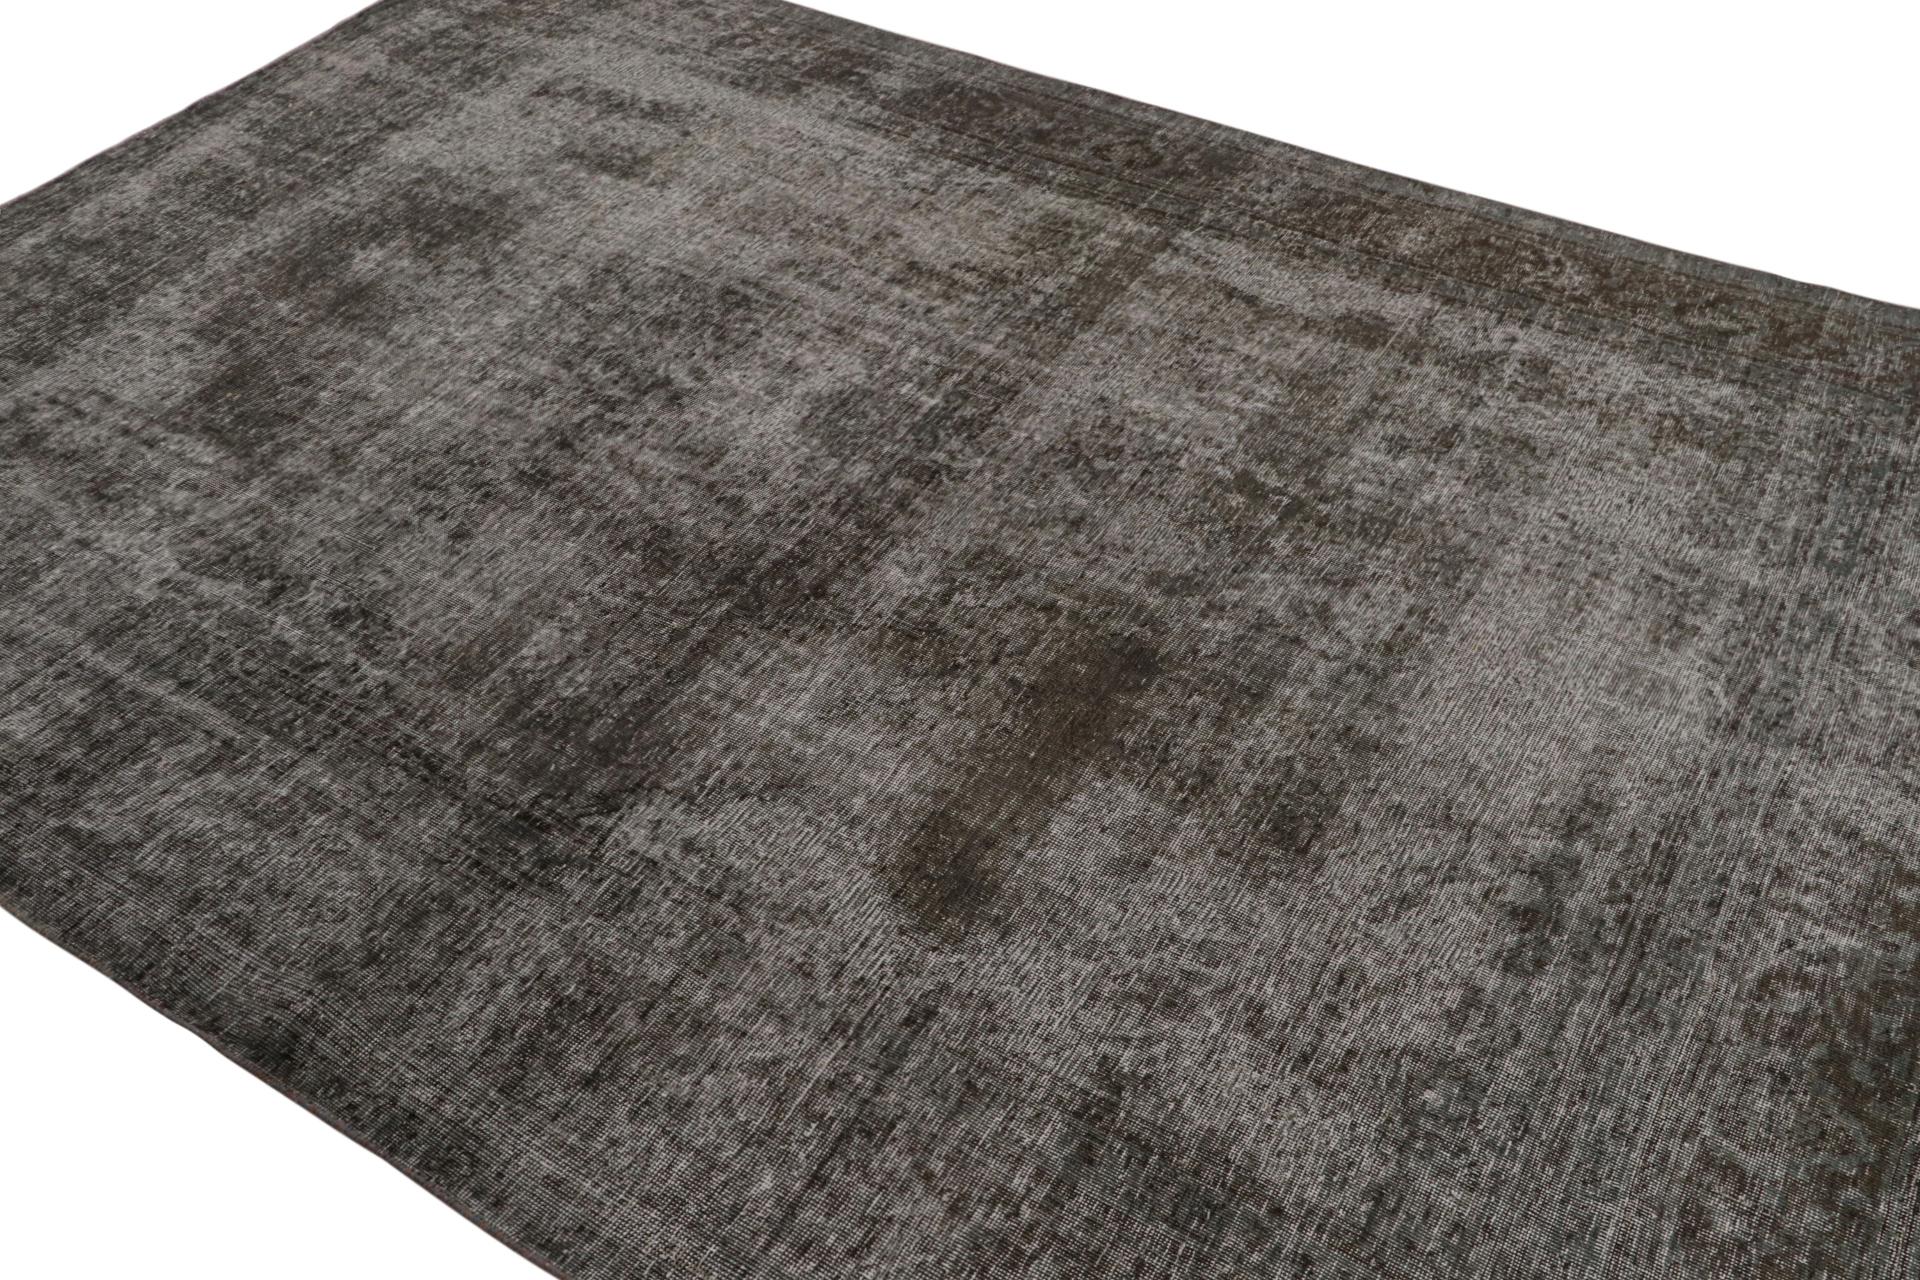 Issu d'une nouvelle et rare collection de tapis surteints, un tapis persan vintage de 8×11, noué à la main en laine vers 1970-1980.

Sur le Design :

Ce tapis vintage a été soumis à un lavage particulier pour lui donner cet aspect ancien et ce style